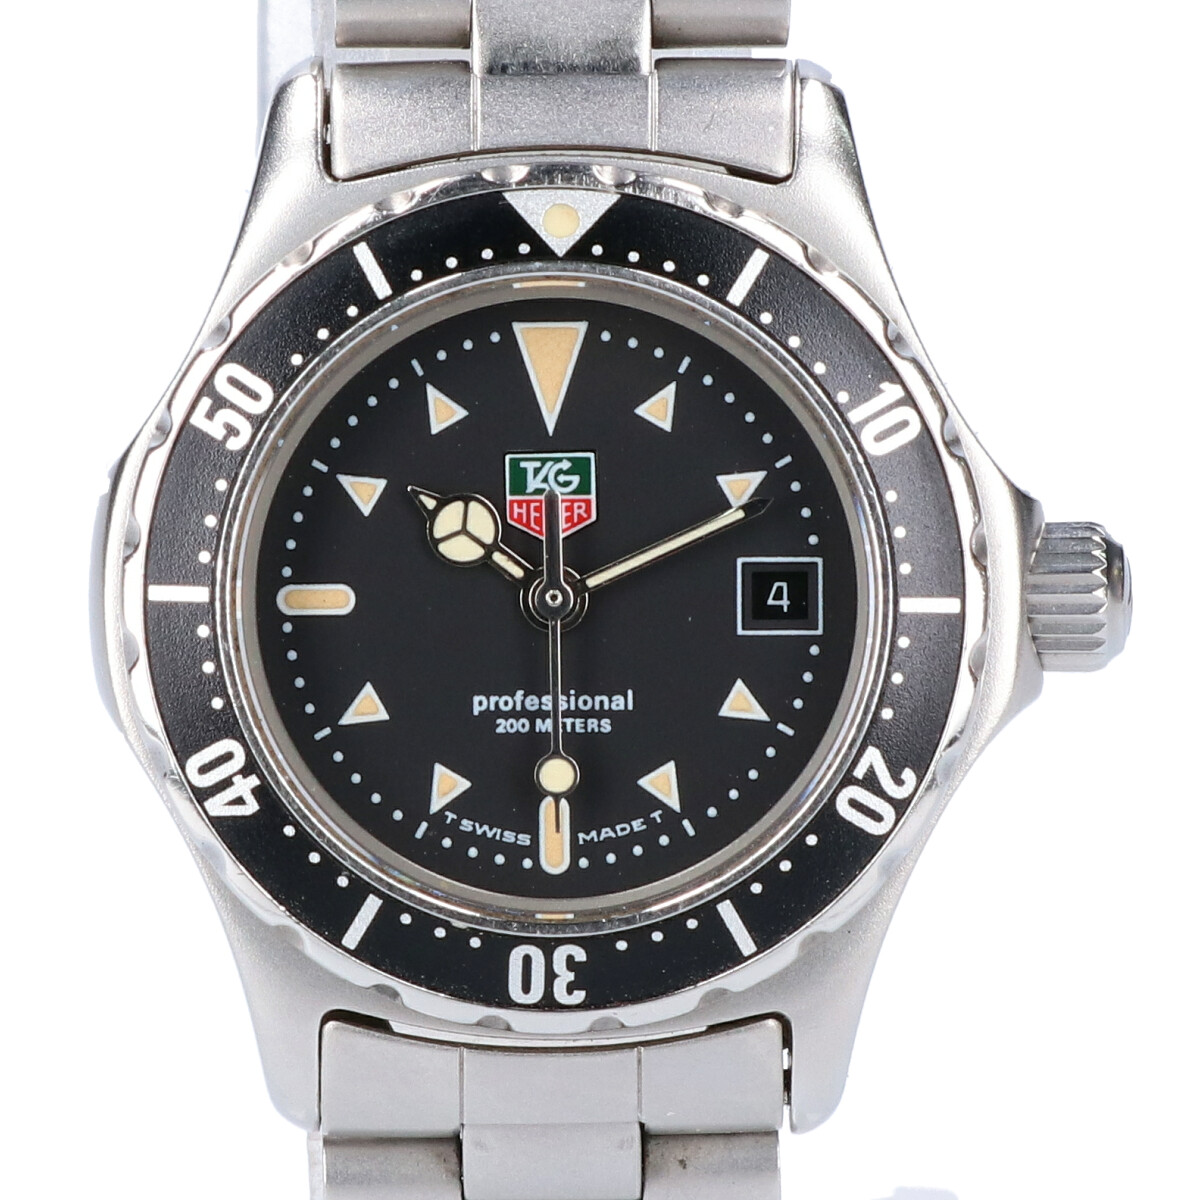 タグホイヤーの973.008R-2 プロフェッショナル 200M クオーツ時計の買取実績です。